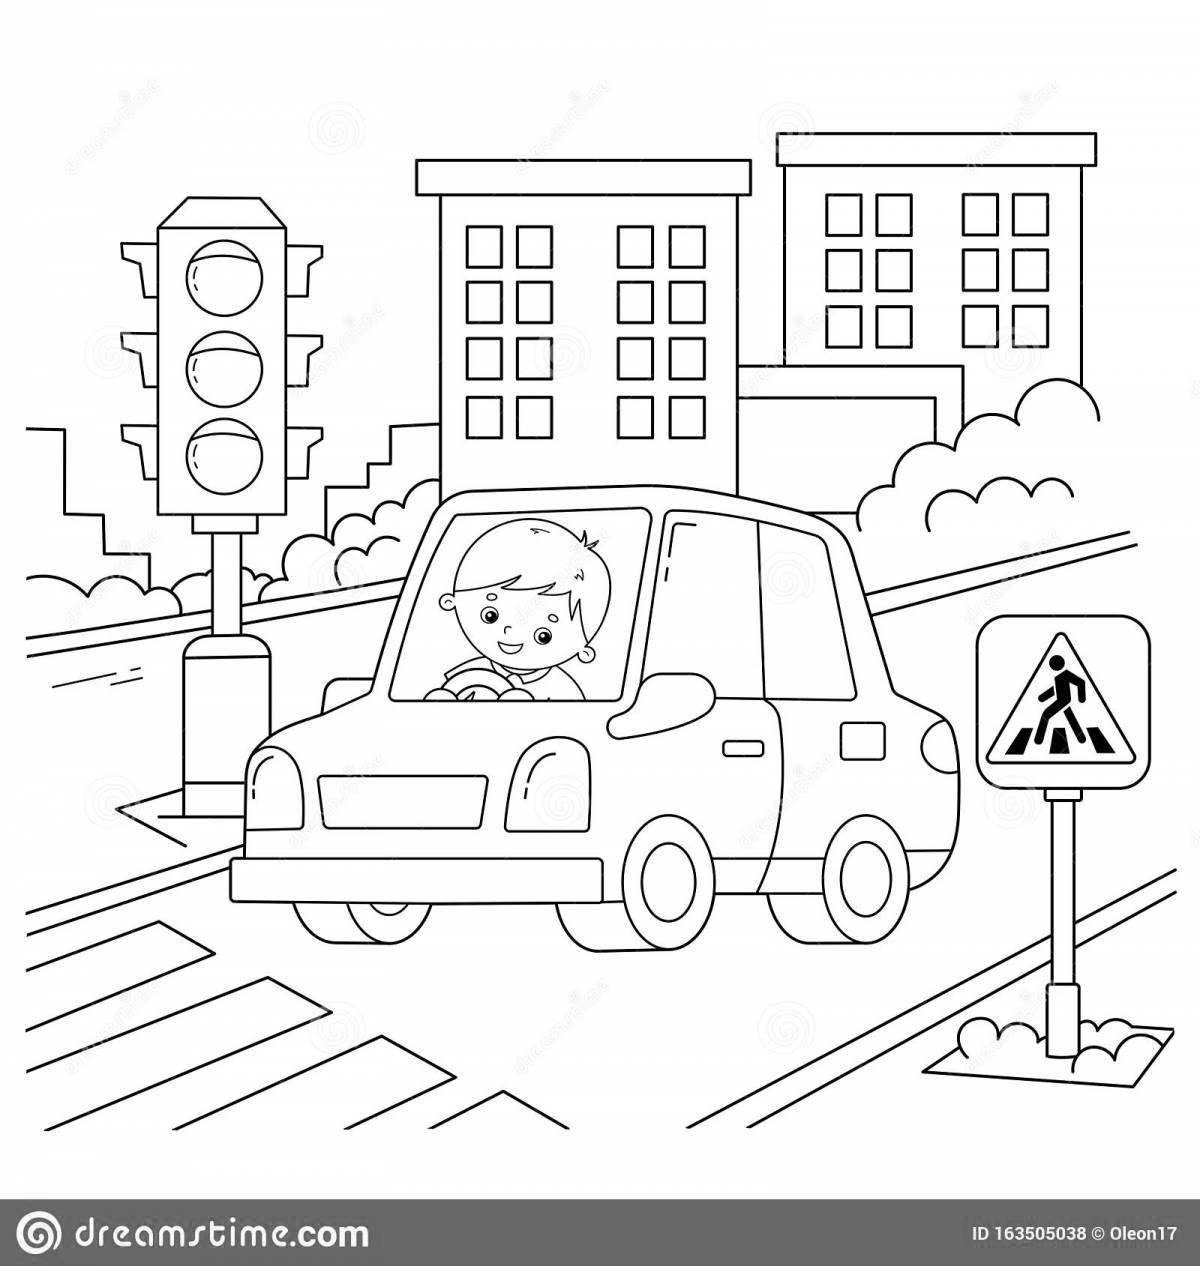 Игривая страница-раскраска «правила дорожного движения» для детей 3-4 лет